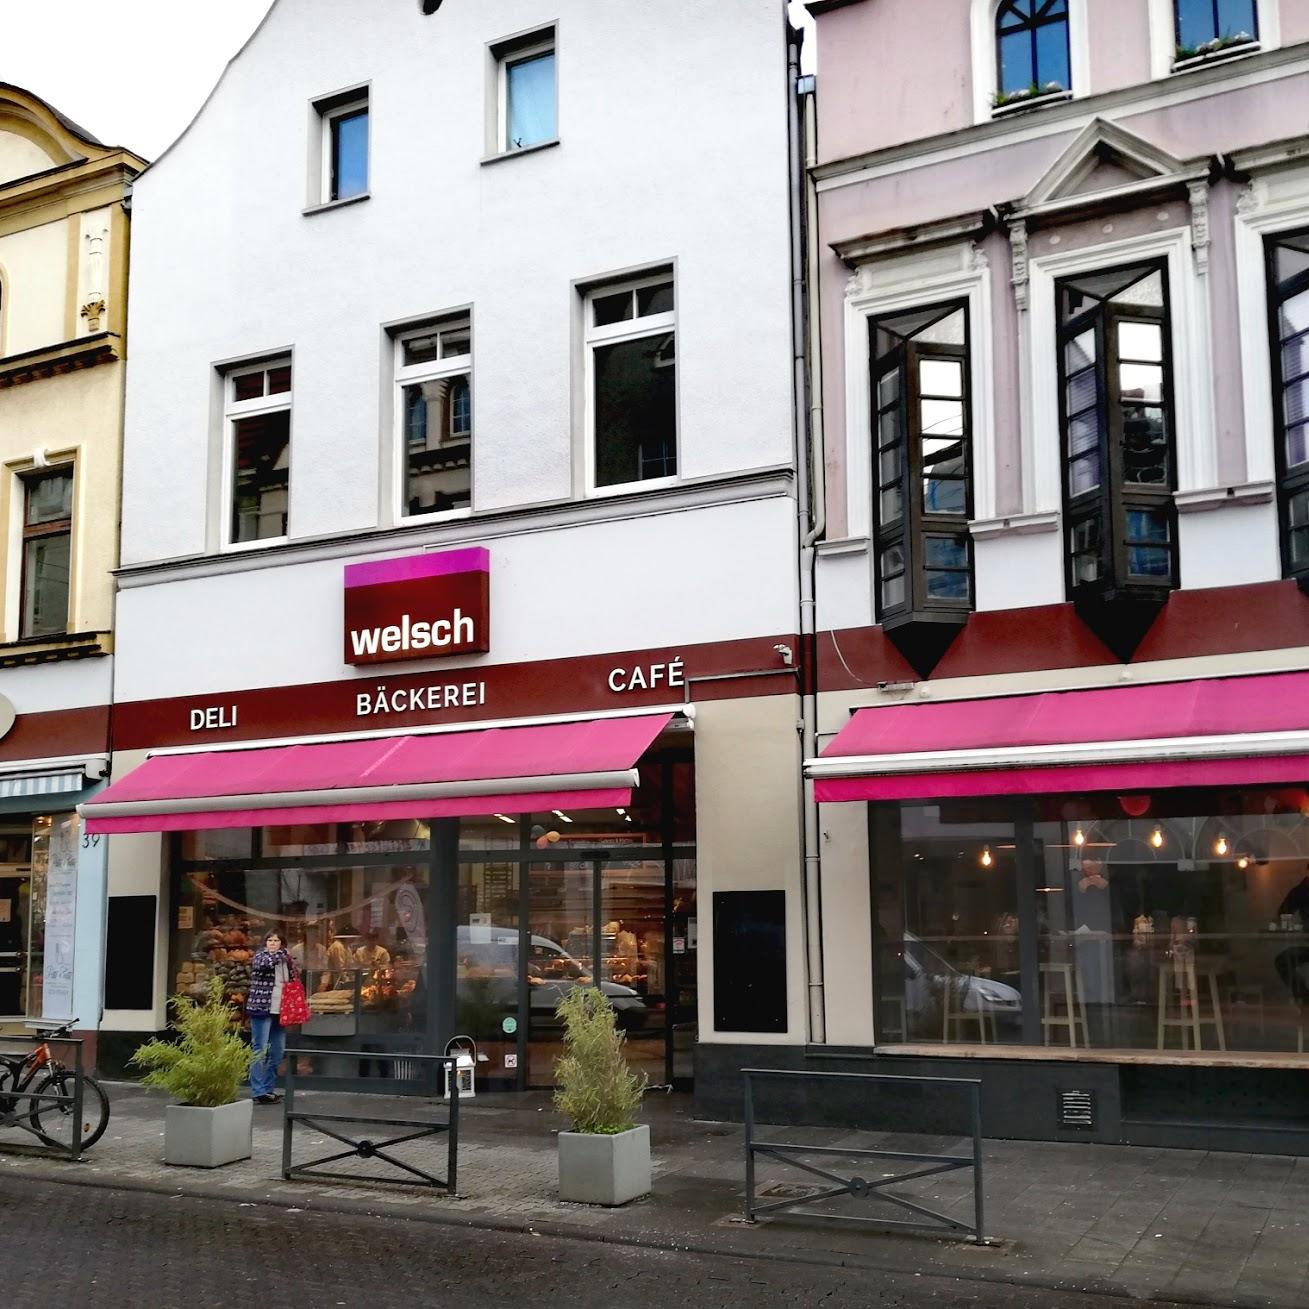 Restaurant "Bäckerei Welsch" in Bad Honnef